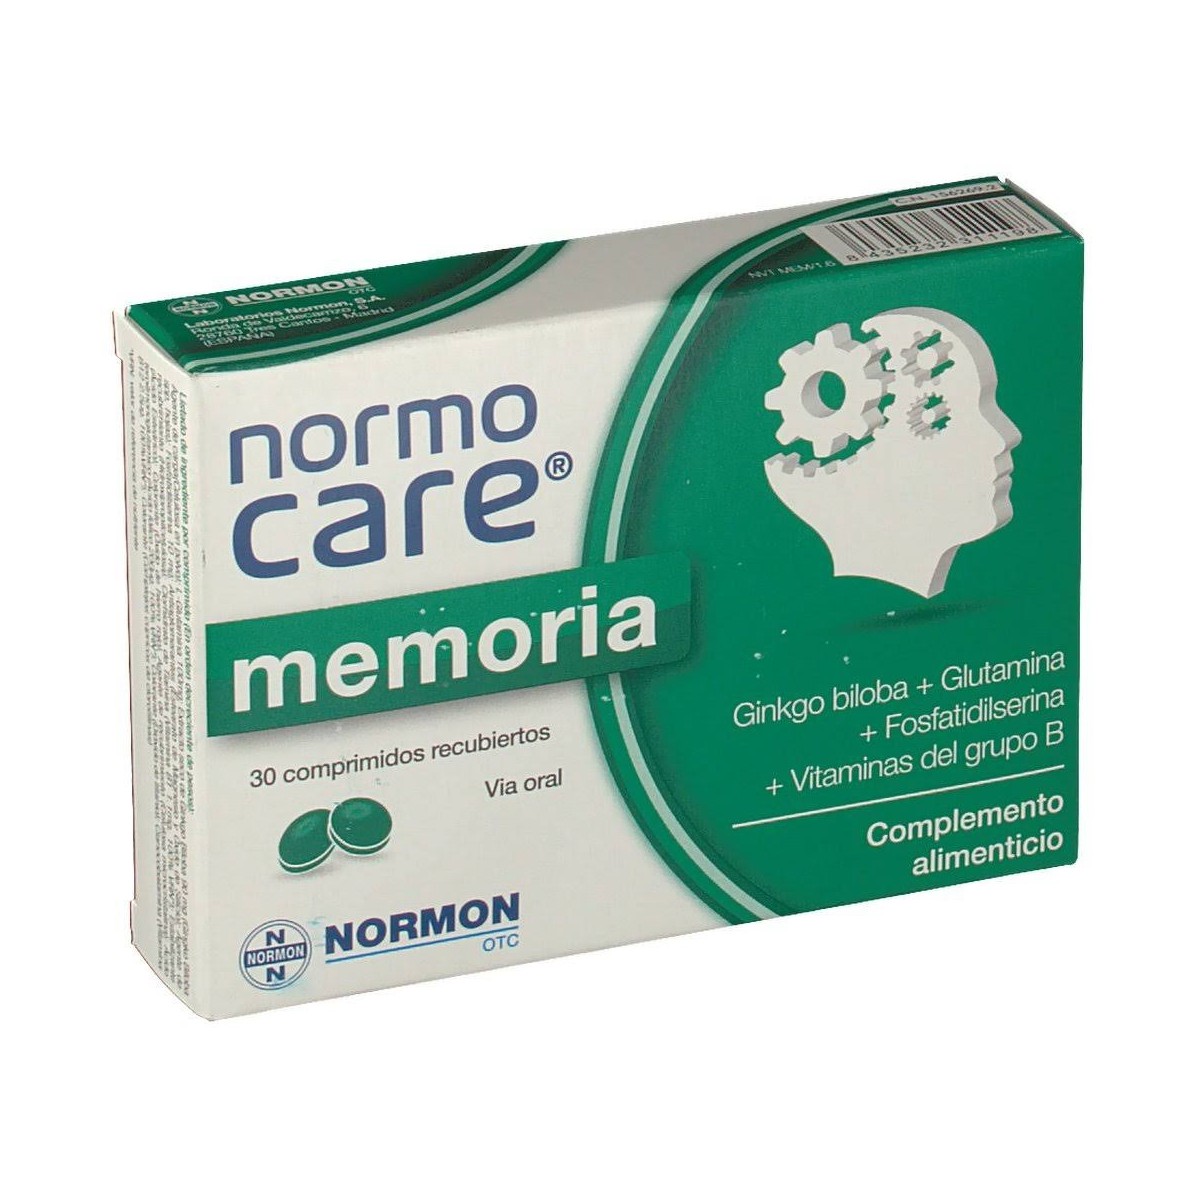 normocare memoria 30 comprimidos